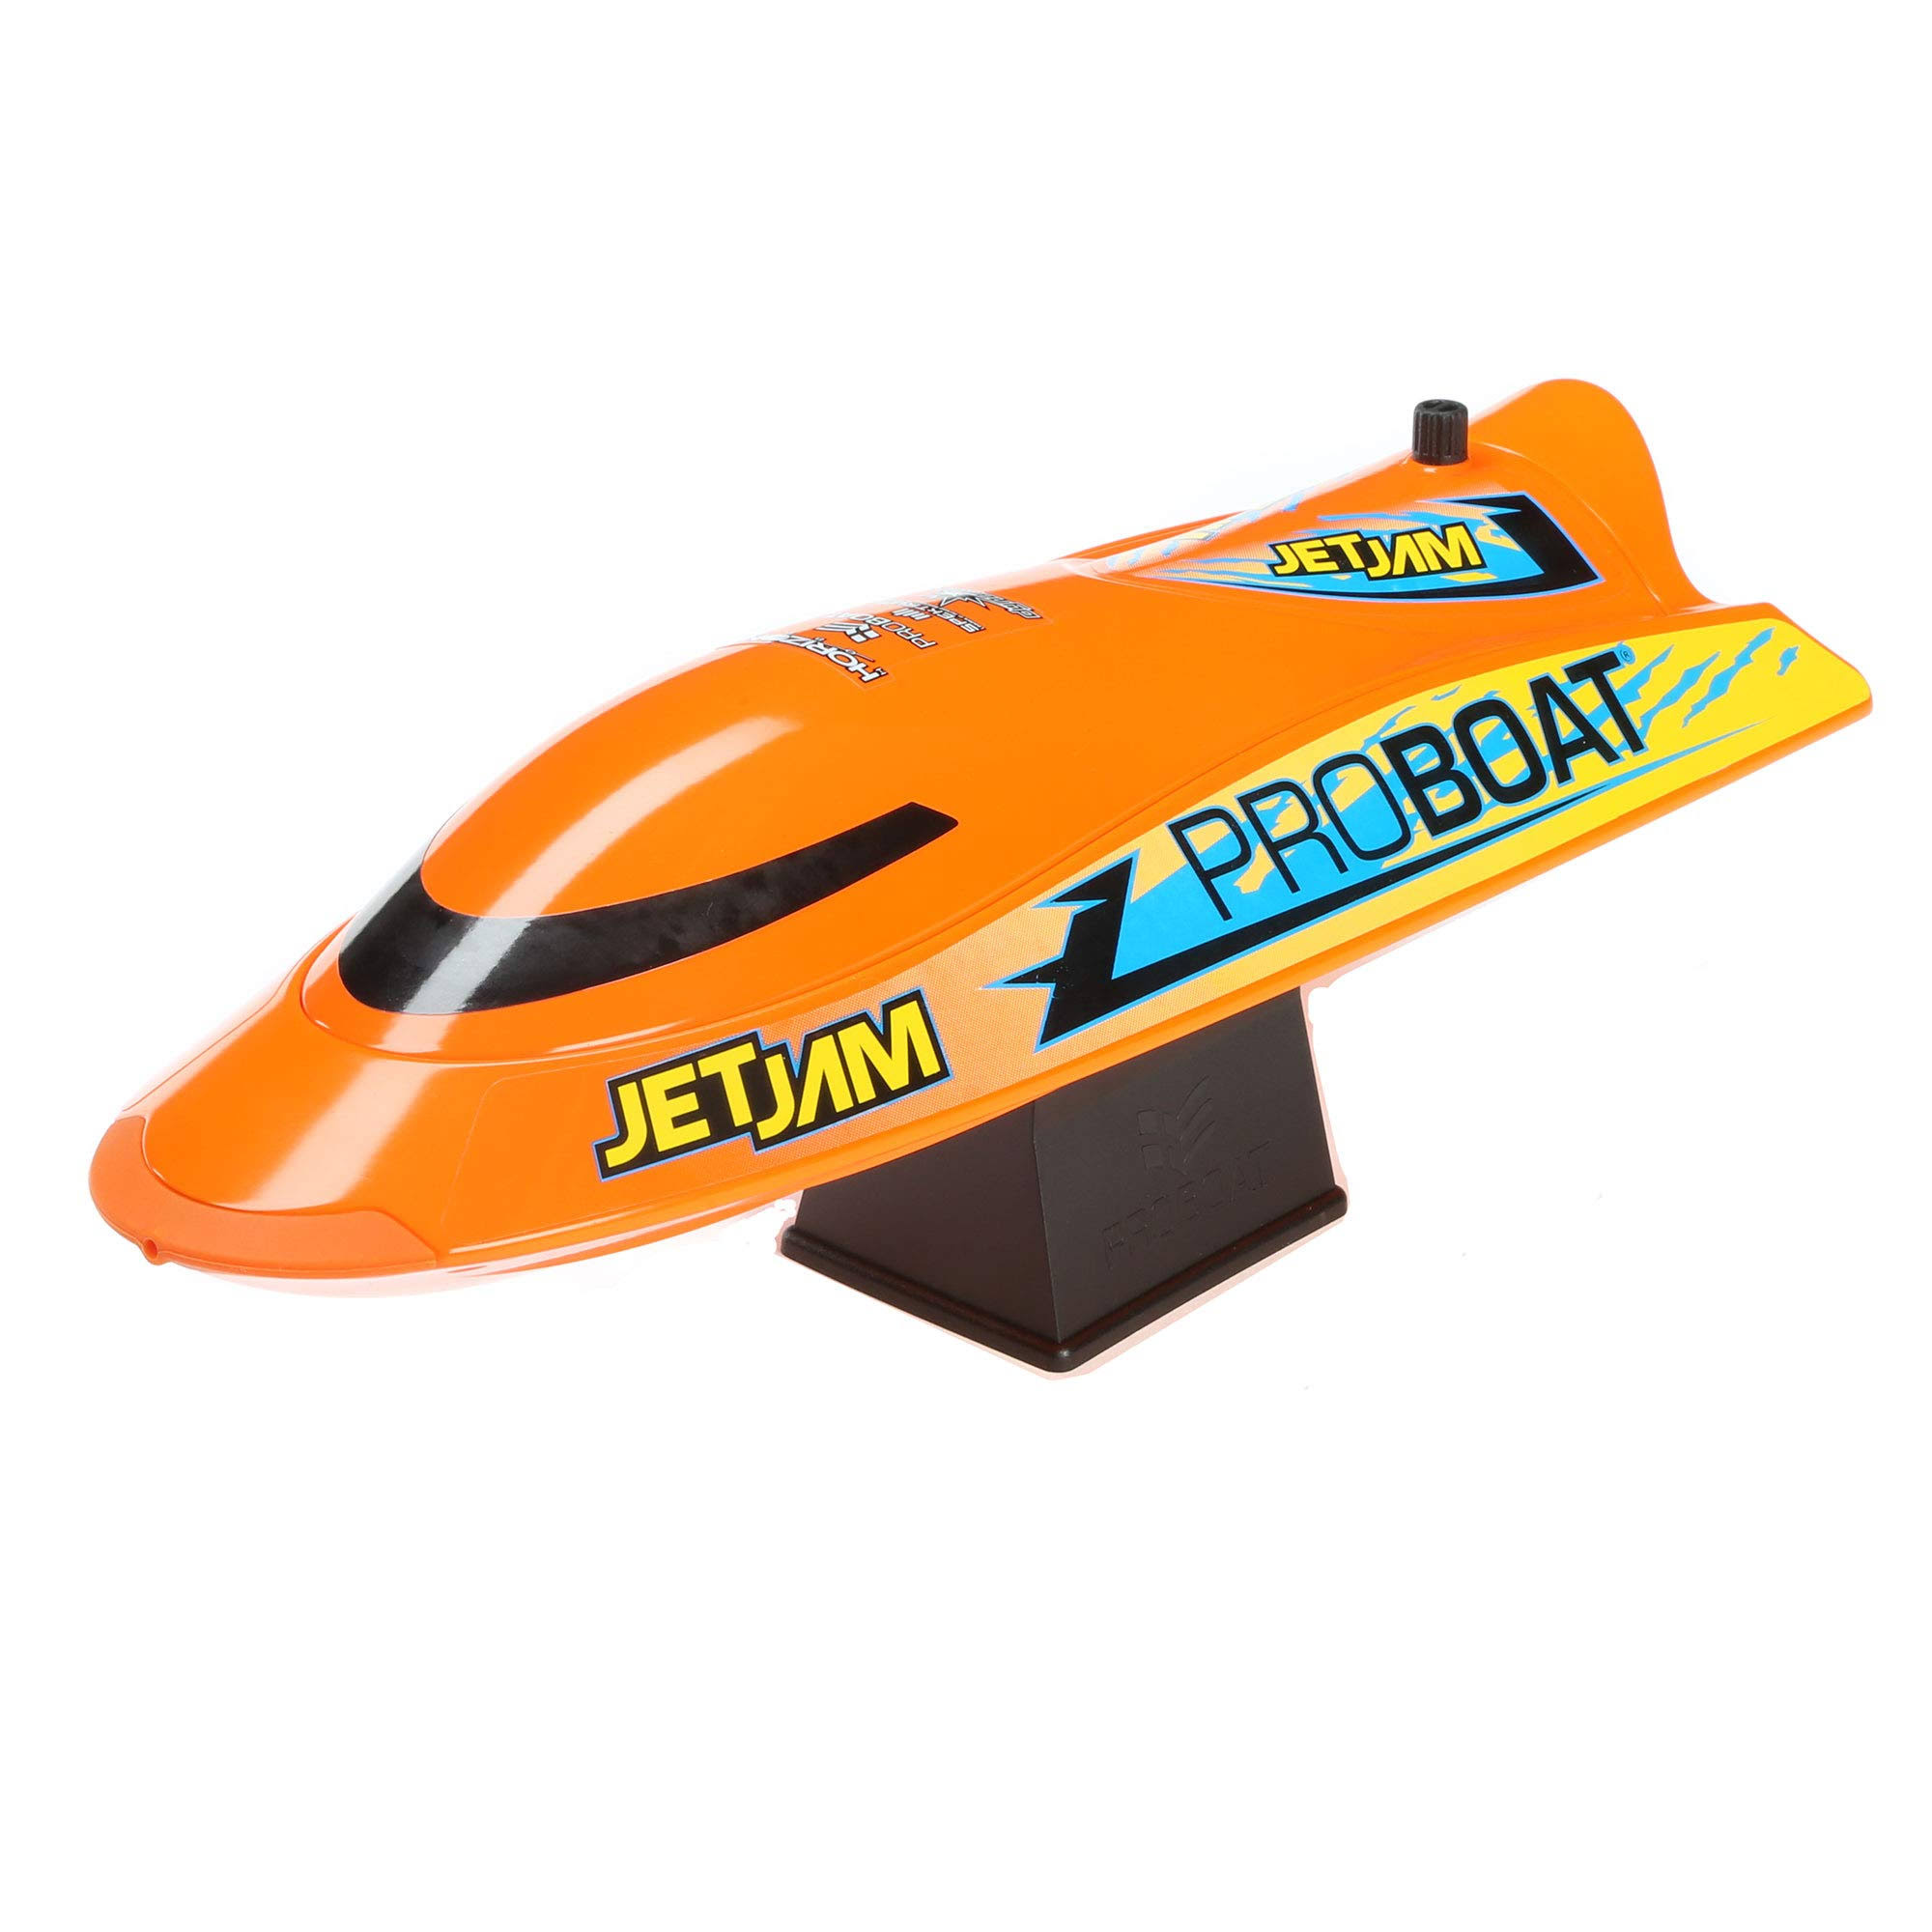 Jet Jam 12-Inch Pool Racer, Orange: RTR - Pro Boat